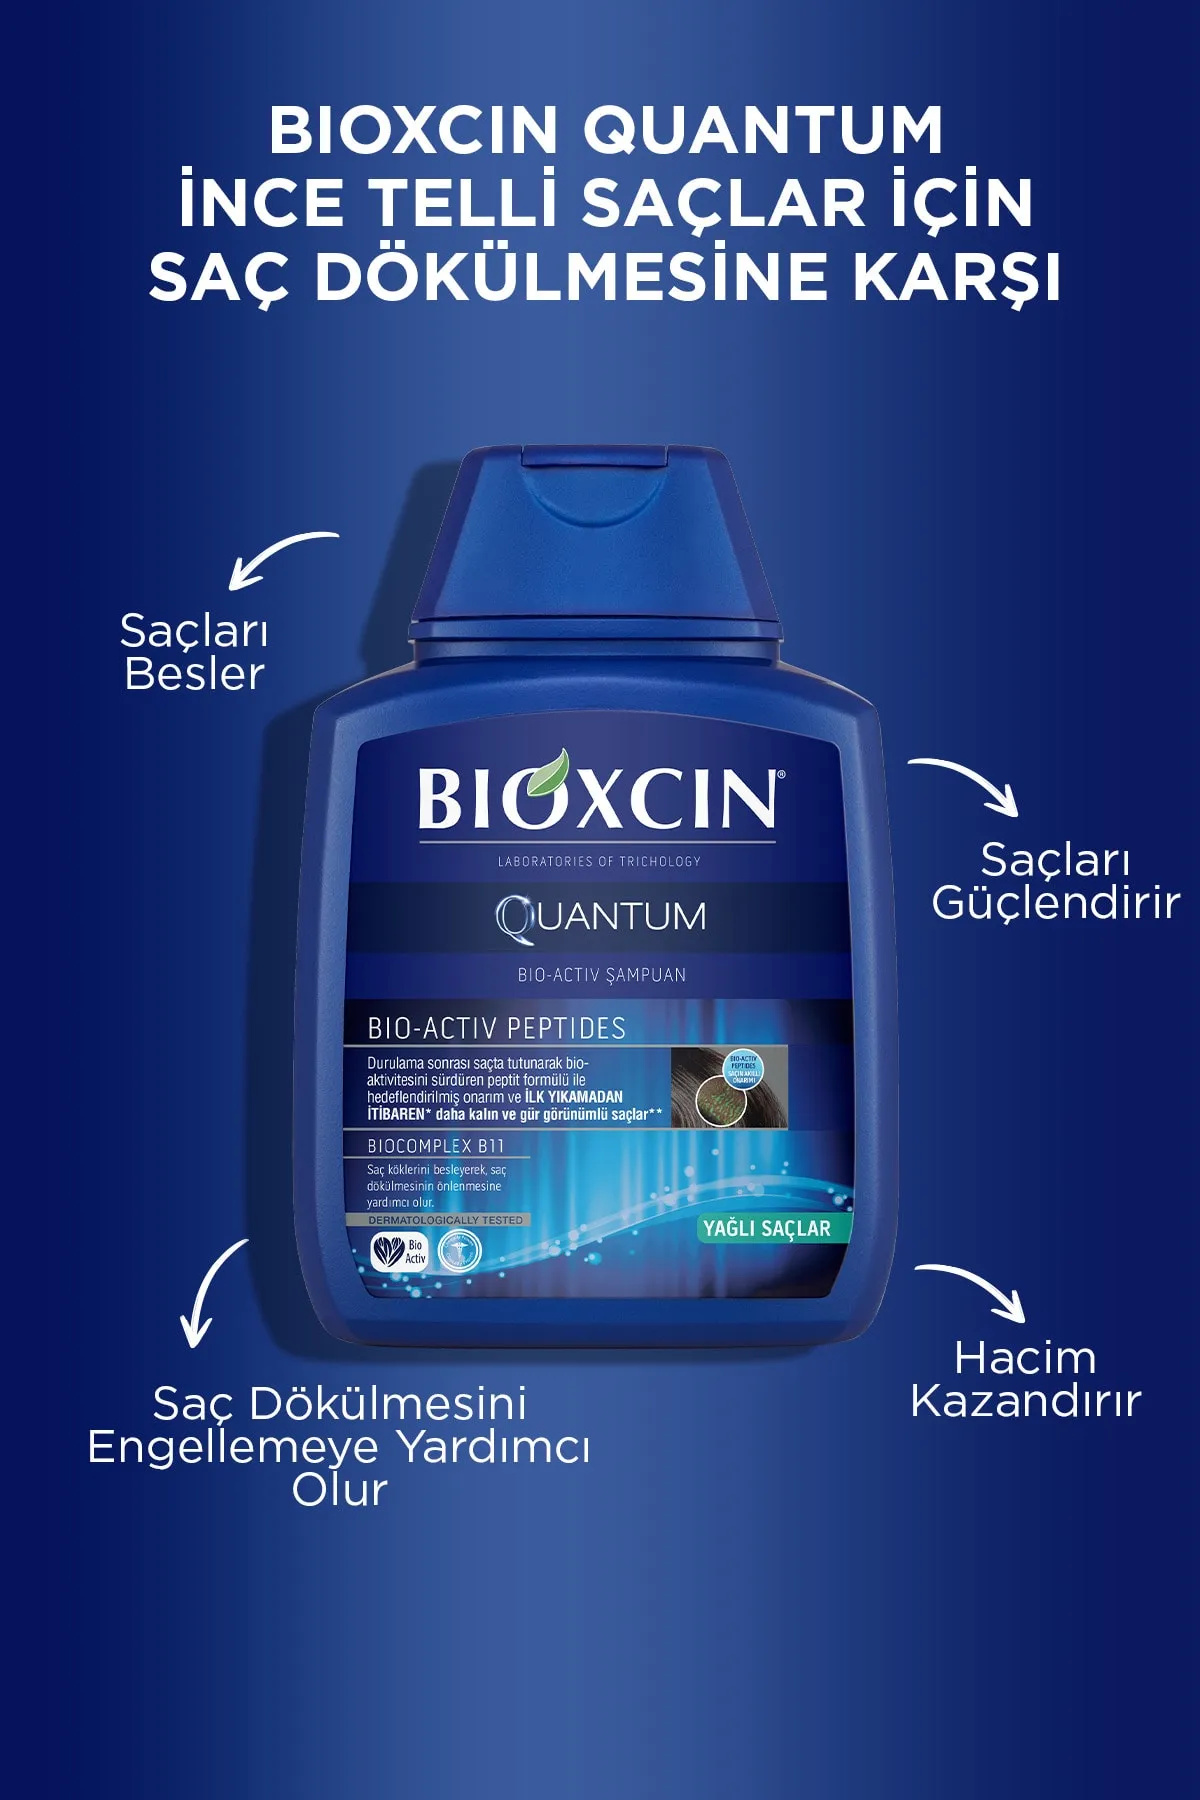 Bioxcin Quantum Yağlı Saçlar İçin Şampuan 300 ml - 4